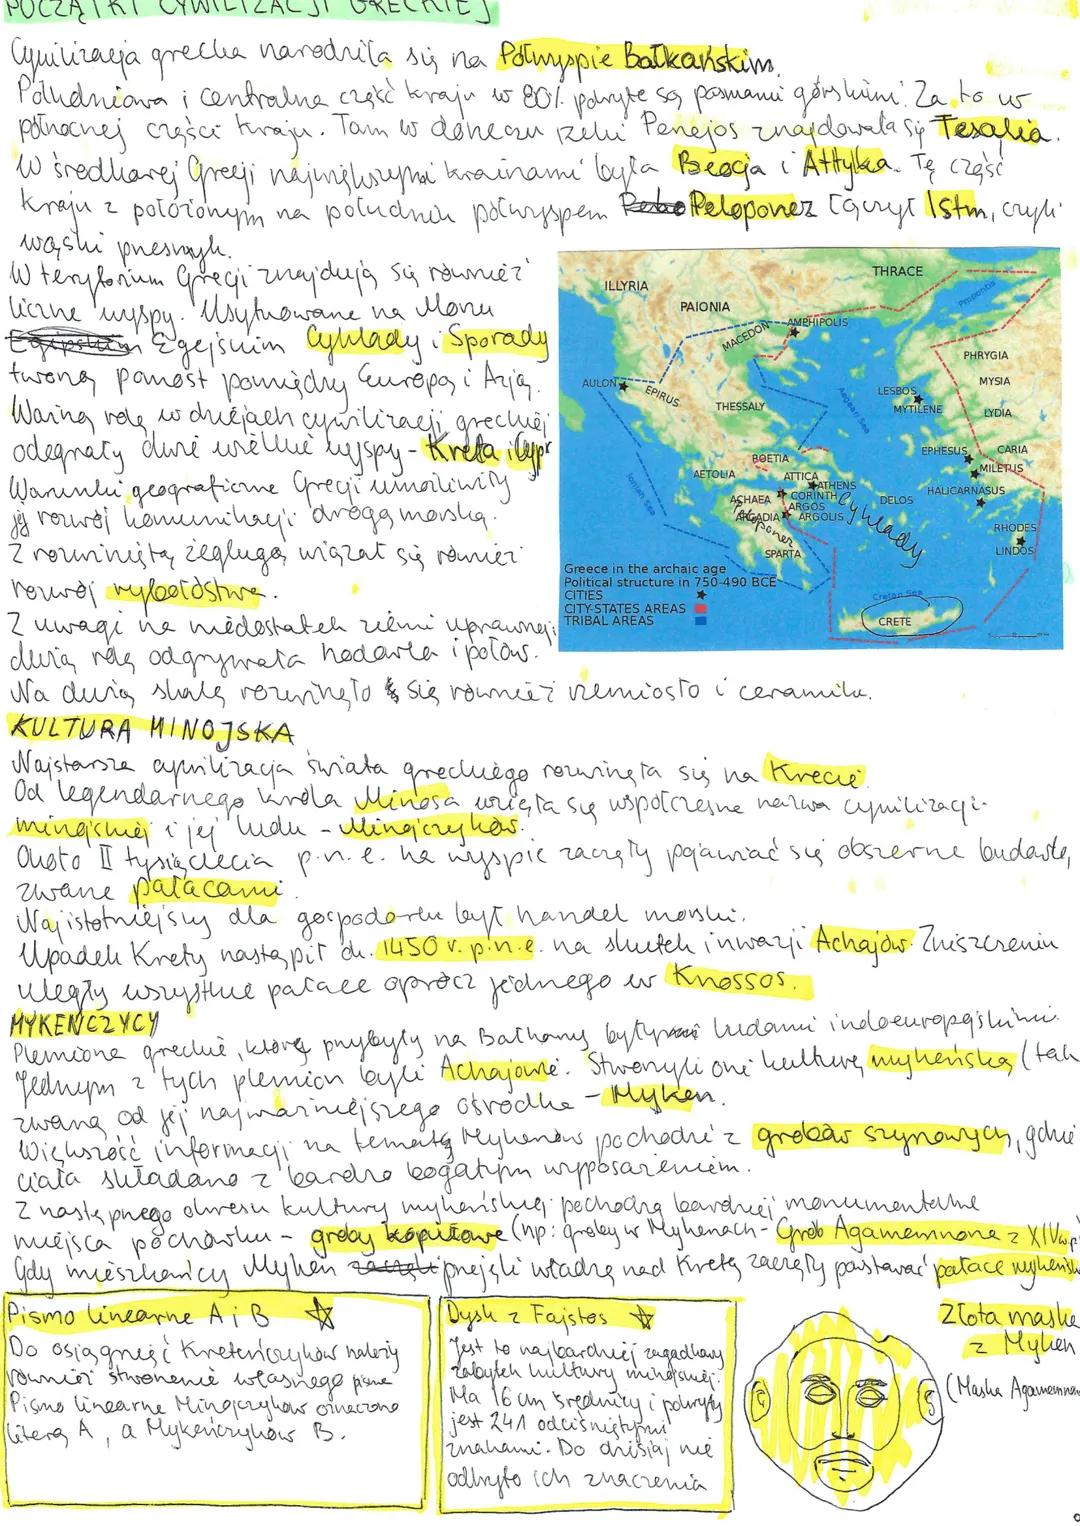 POCZĄ
Cquilizacja grecha narodrila się na Połwyspie Bałkańskim.
Poludniowa i centralne część kraju w 80%. polryte sa pamami górskim. Za to u